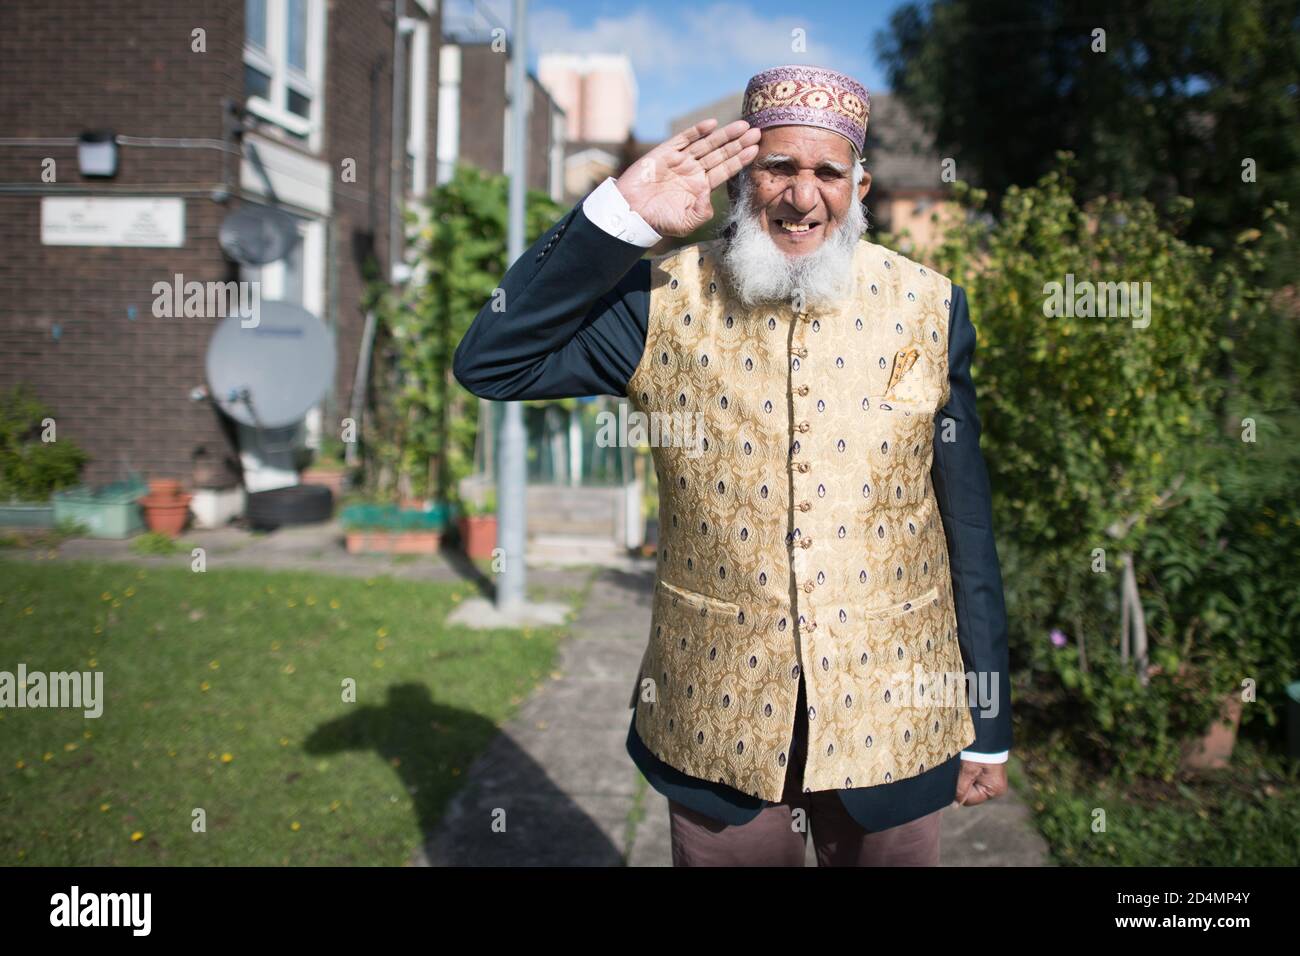 Herr Dabirul Islam Choudhury, der während der Covid-19 mit dem OBE für wohltätige Zwecke ausgezeichnet wurde, fotografiert in seinem Haus in Bow, Ost-London. Stockfoto